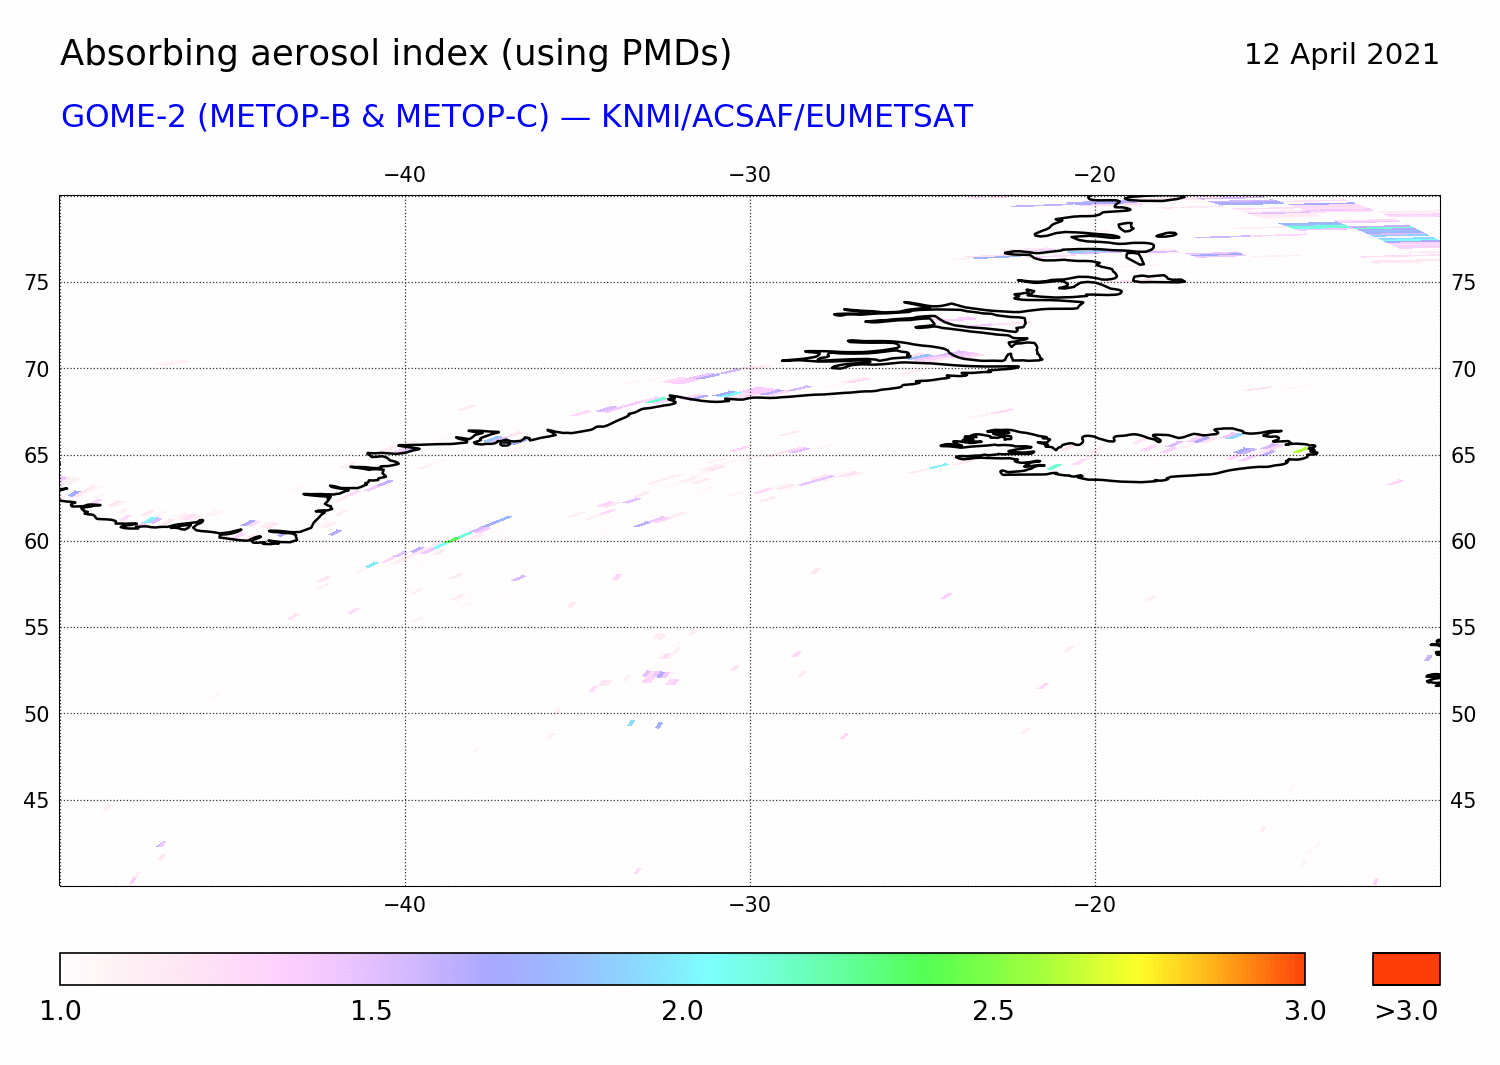 GOME-2 - Absorbing aerosol index of 12 April 2021